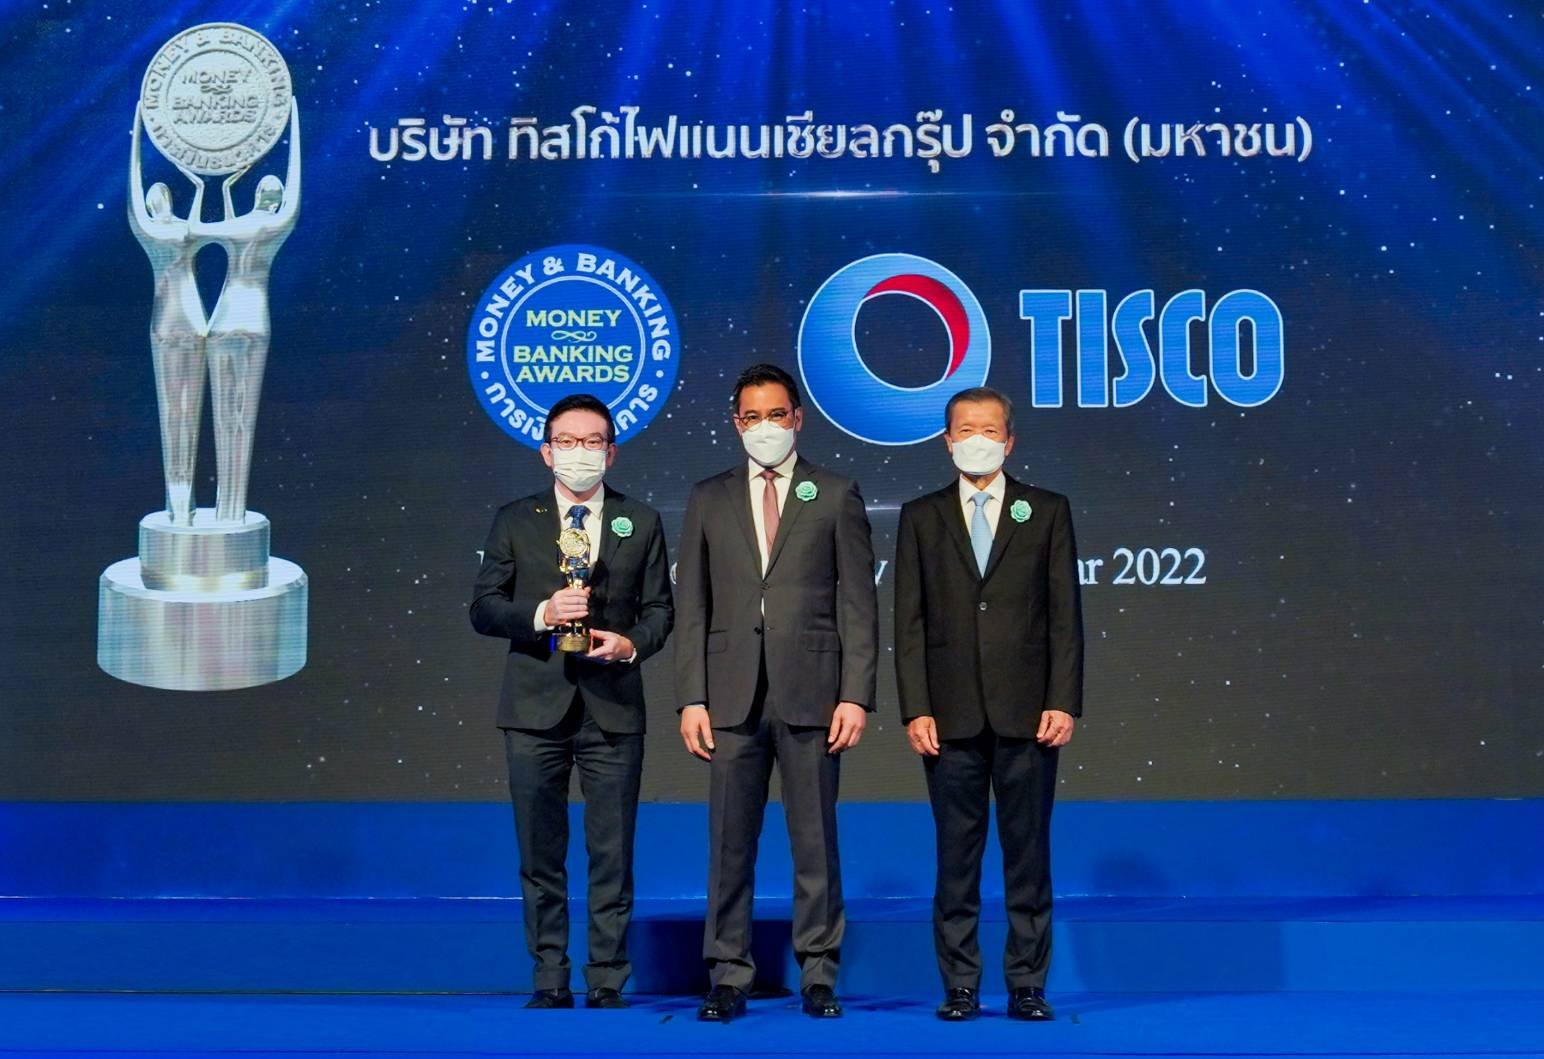 กลุ่มทิสโก้ คว้ารางวัลเกียรติยศ บริษัทยอดเยี่ยม กลุ่มธุรกิจการเงิน เวที Money & Banking Awards 2022 